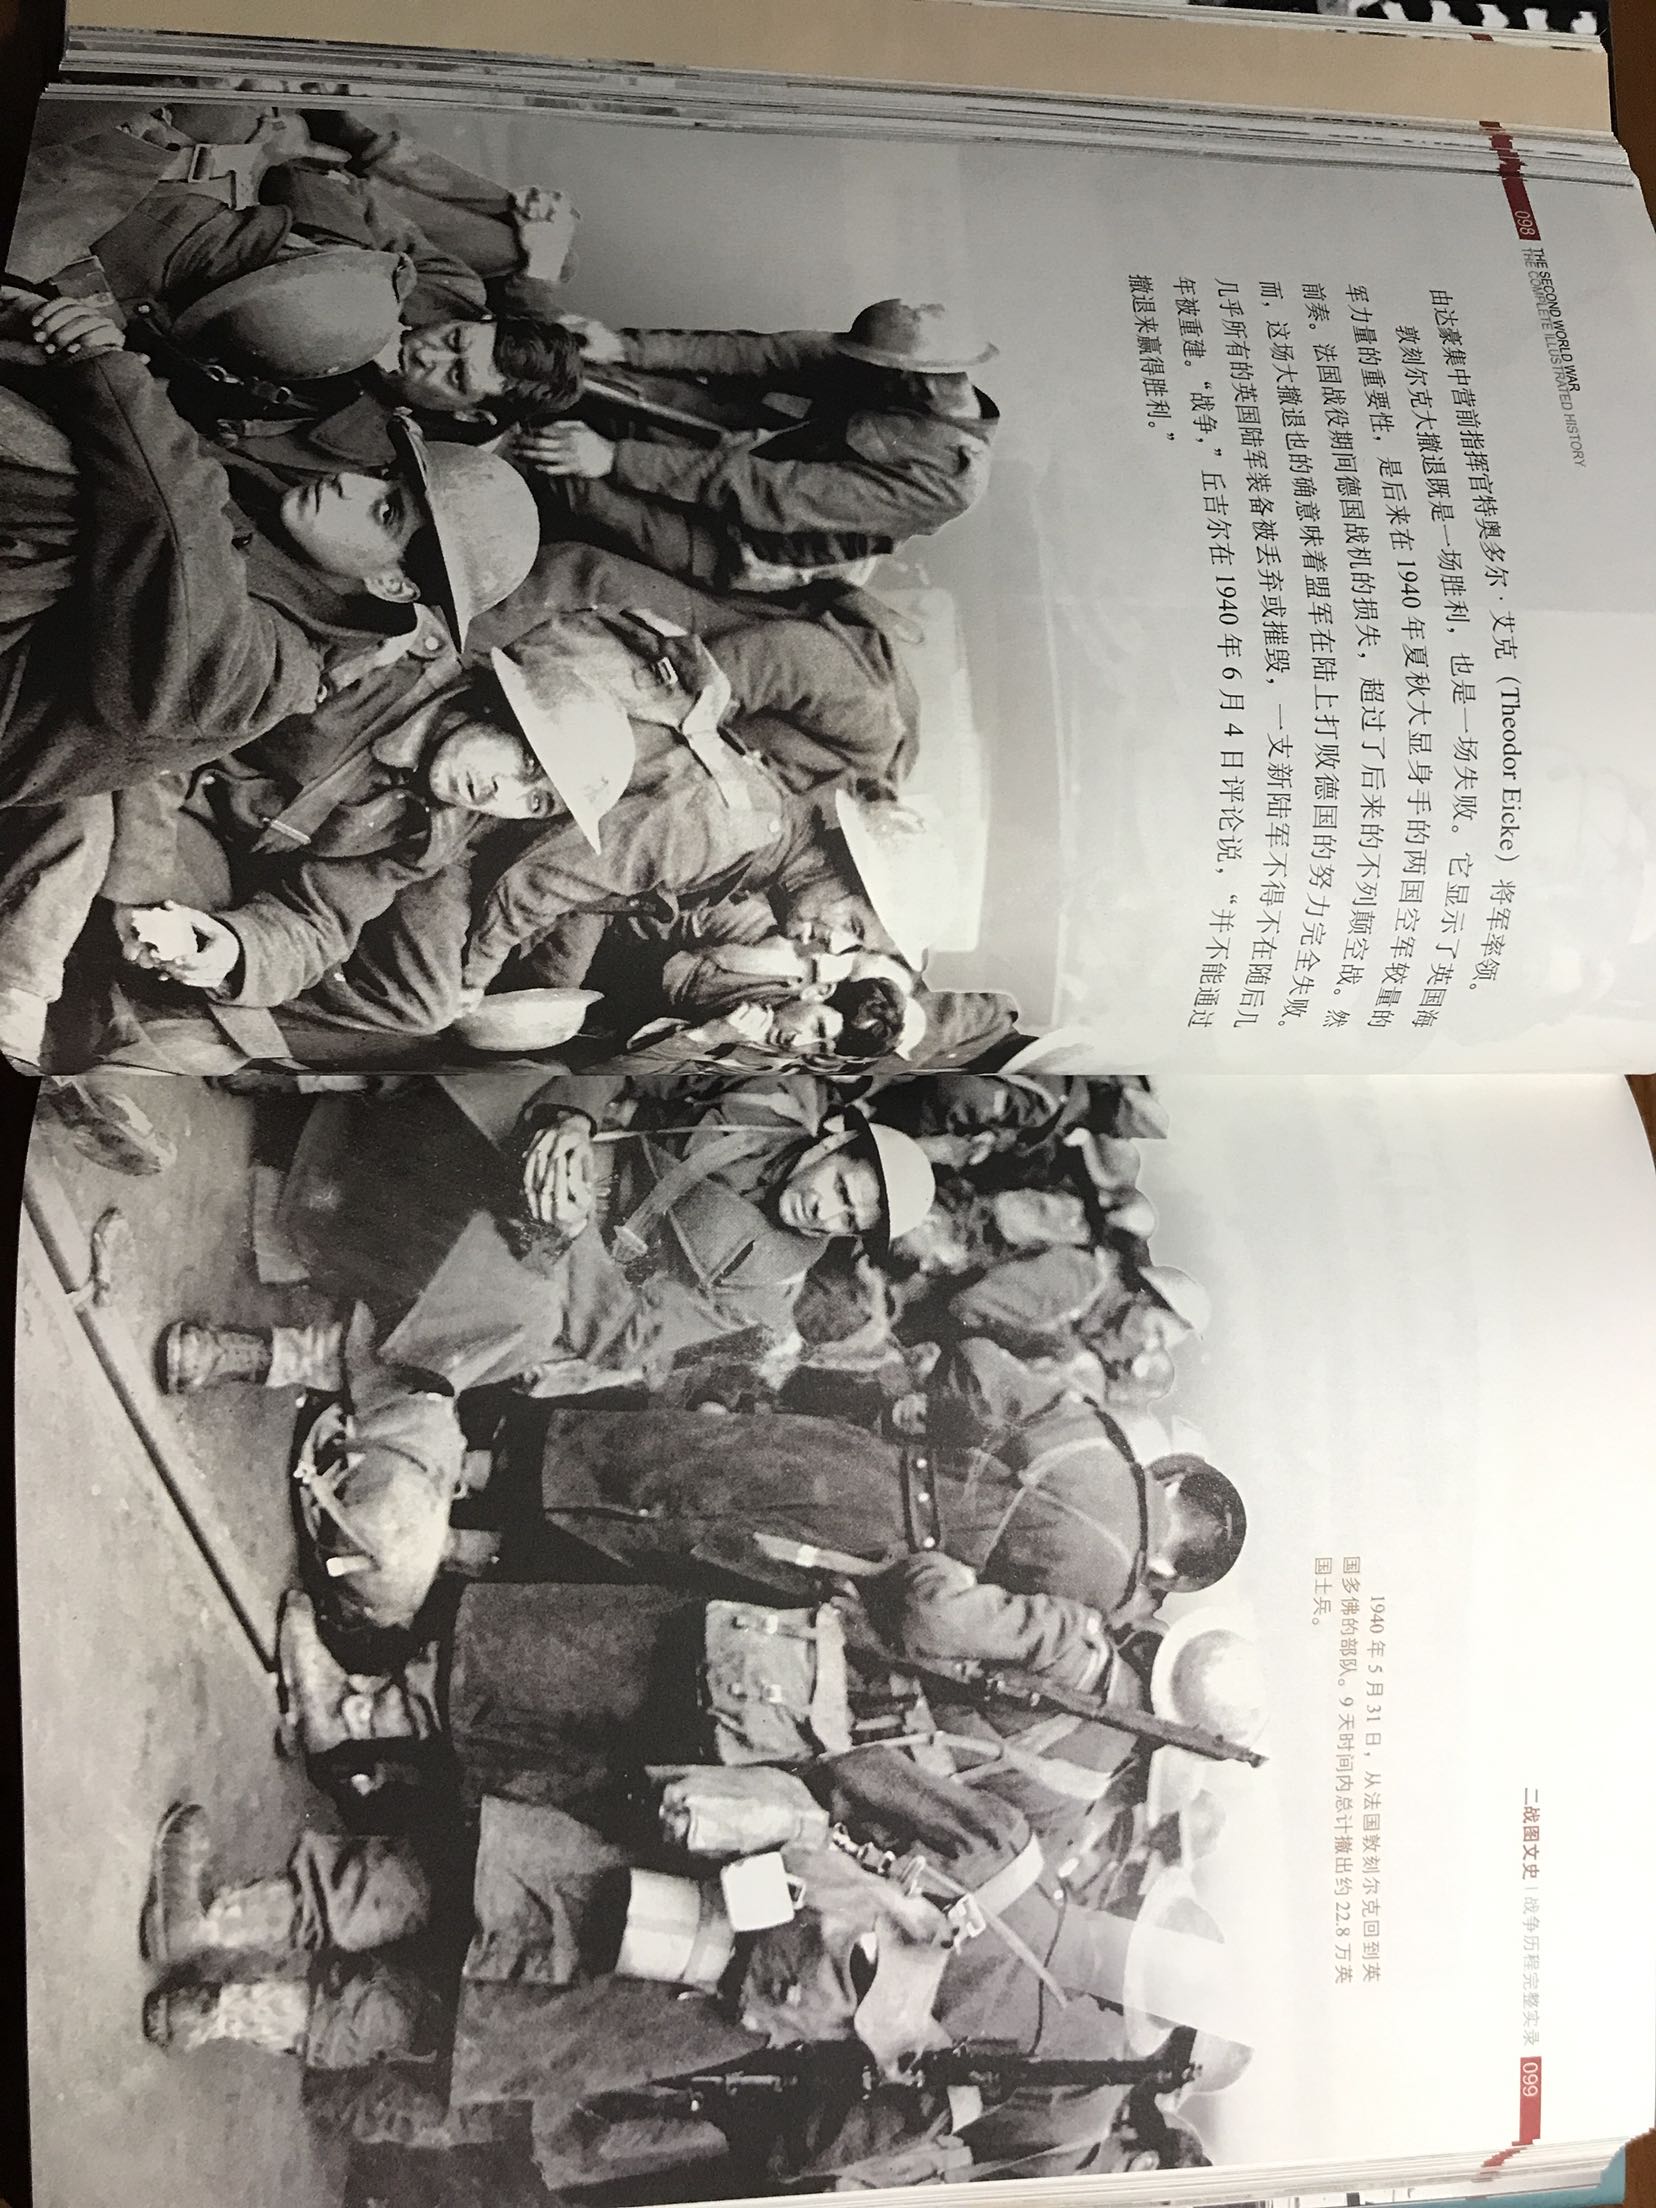 非常精彩详实的二战记录书藉，许多未公开的珍贵的照片，值得收藏！